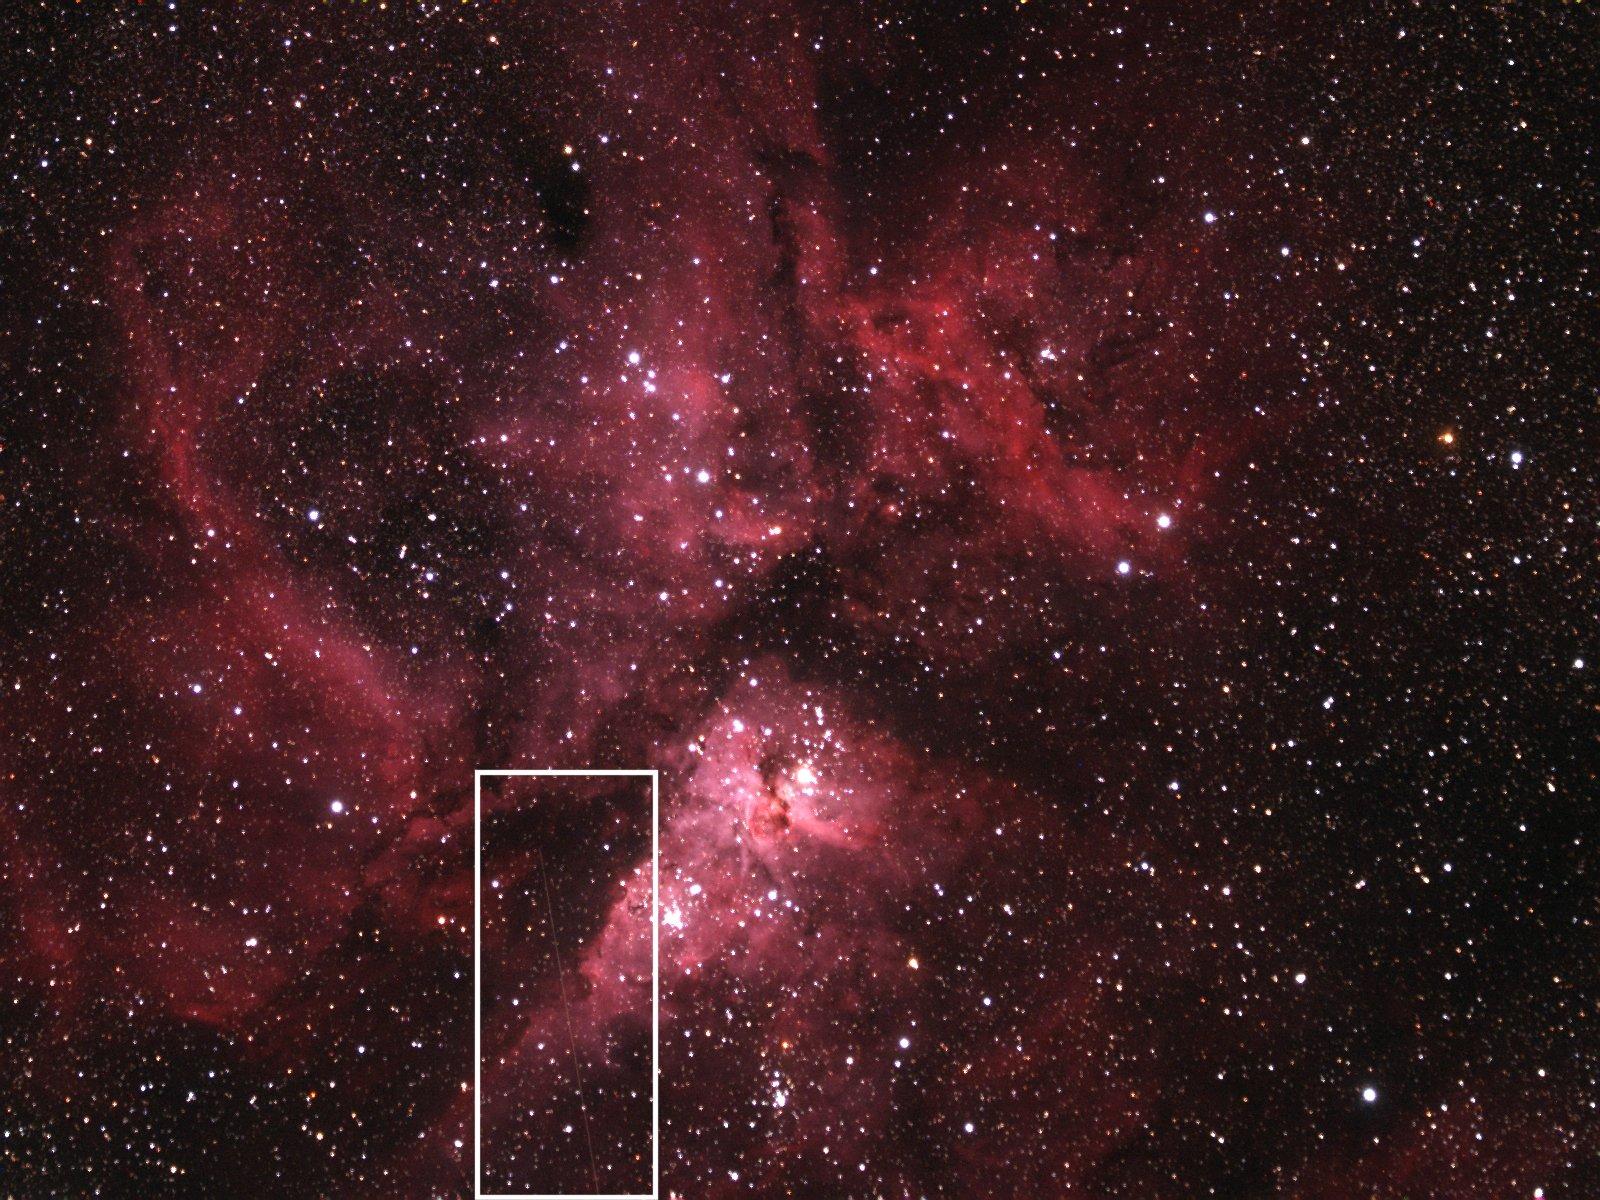 Depuis l'observatoire australien de Siding Spring, un télescope automatique a enregistré la trace du passage de l'astéroïde 2012 DA 14 dans le champ de la nébuleuse qui entoure l'étoile Eta Carinae. © Nasa, MSFC, Aaron Kingery